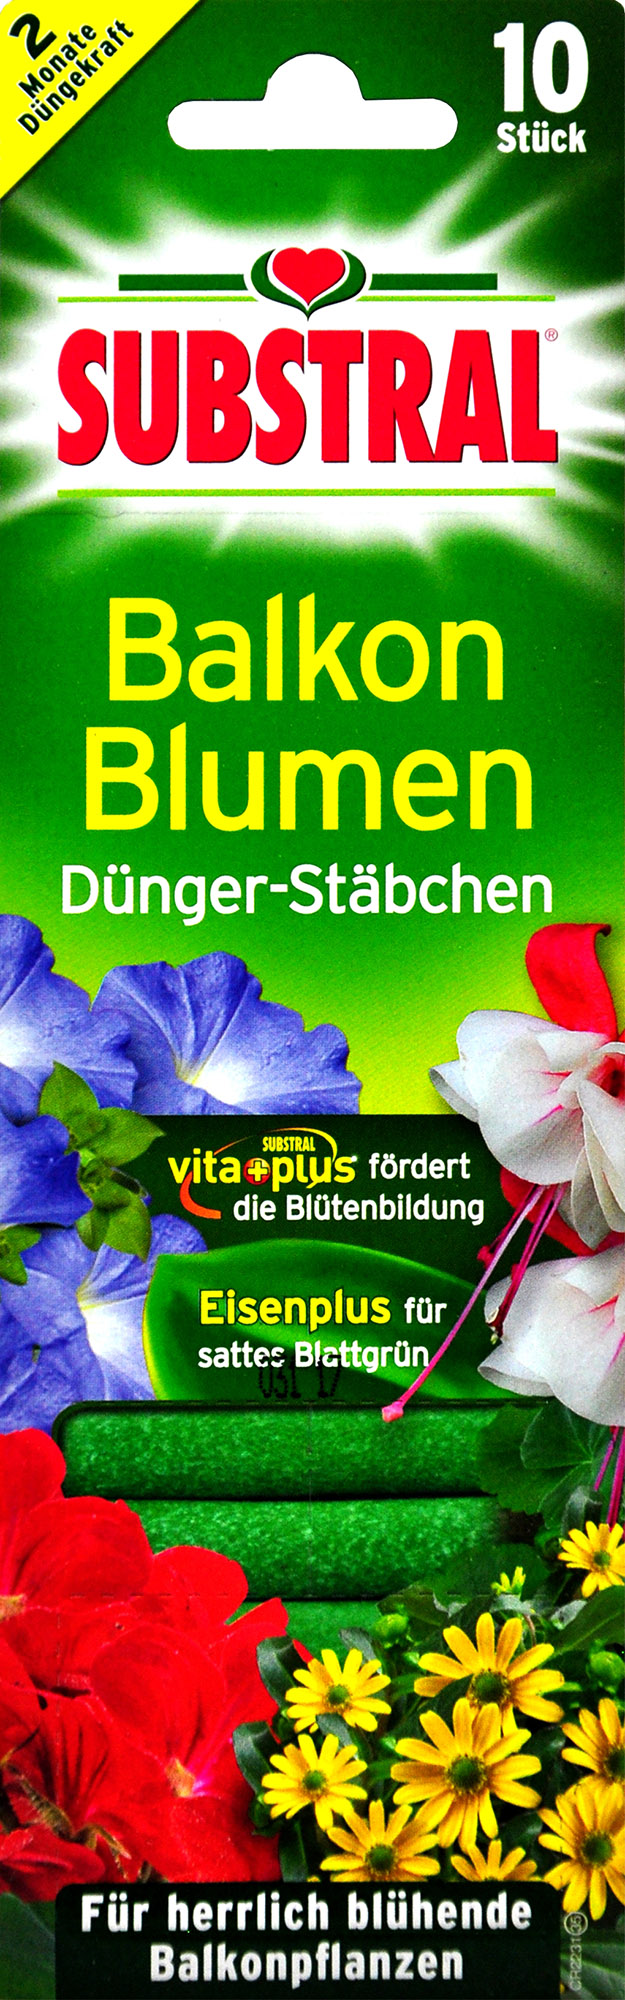 Substral Balkonblumen Düngerstäbchen - 10 Stück